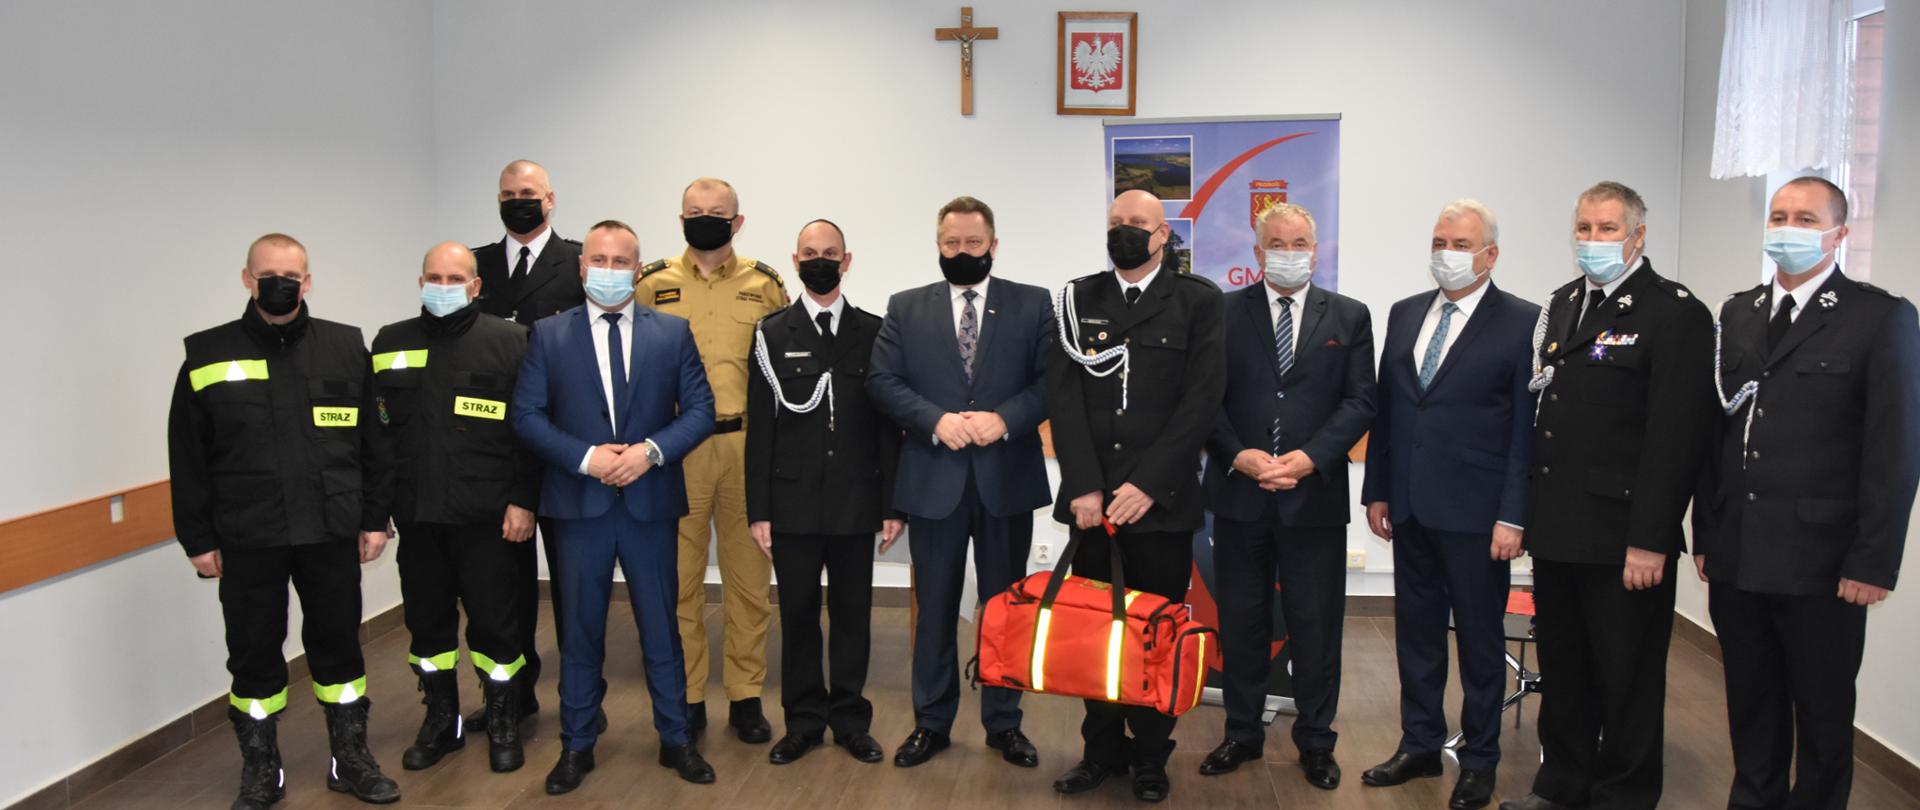 Zdjęcie obrazuje posła na sejm RP, samorządowców powiatu suwalskiego, strażaka PSP i druhów OSP a jeden z nich trzyma torbę medyczną